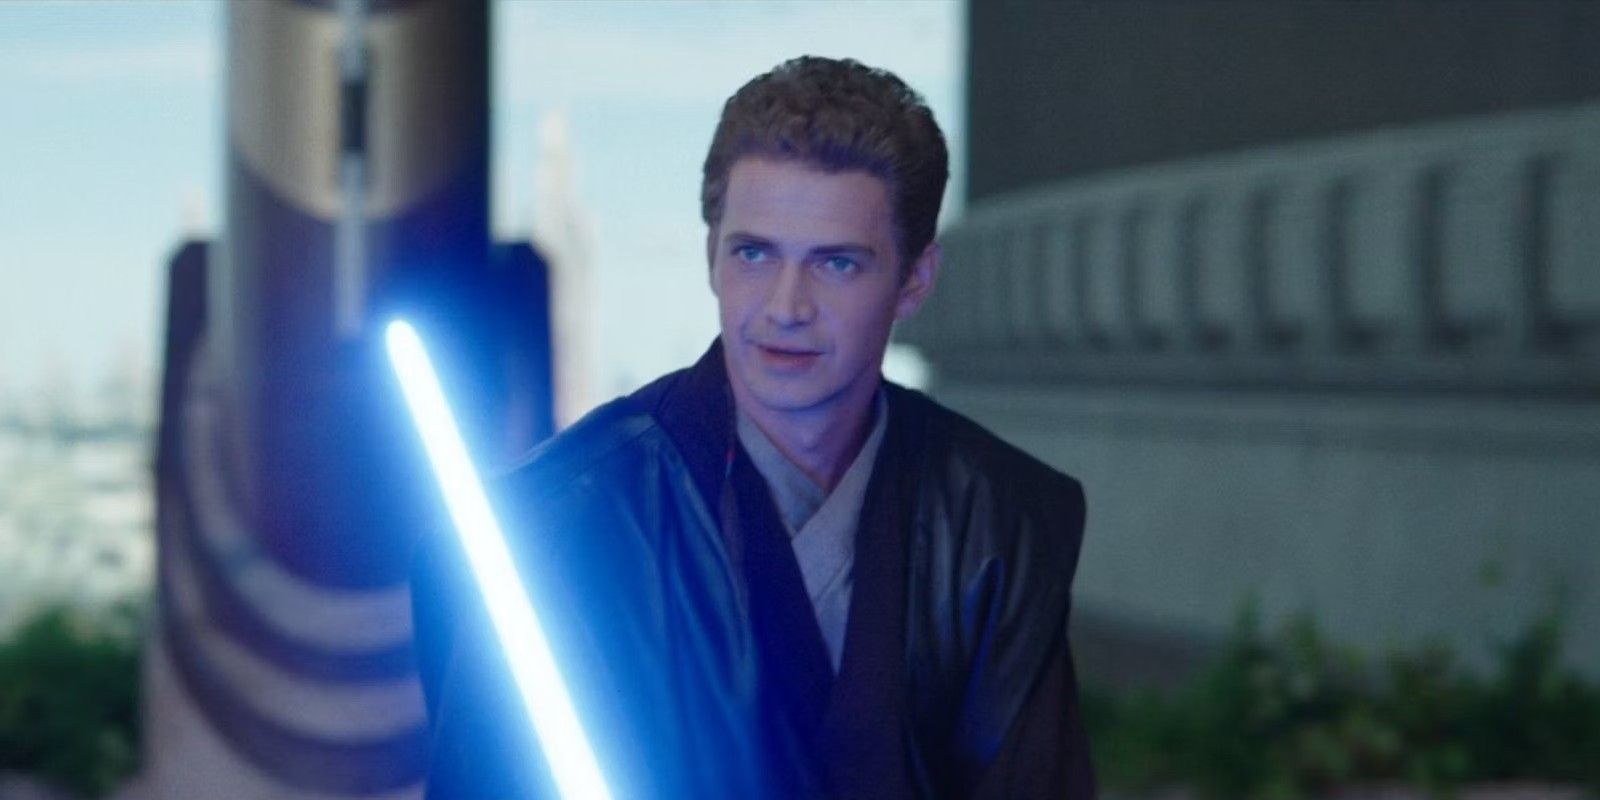 Anakin Skywalker holding a lightsaber